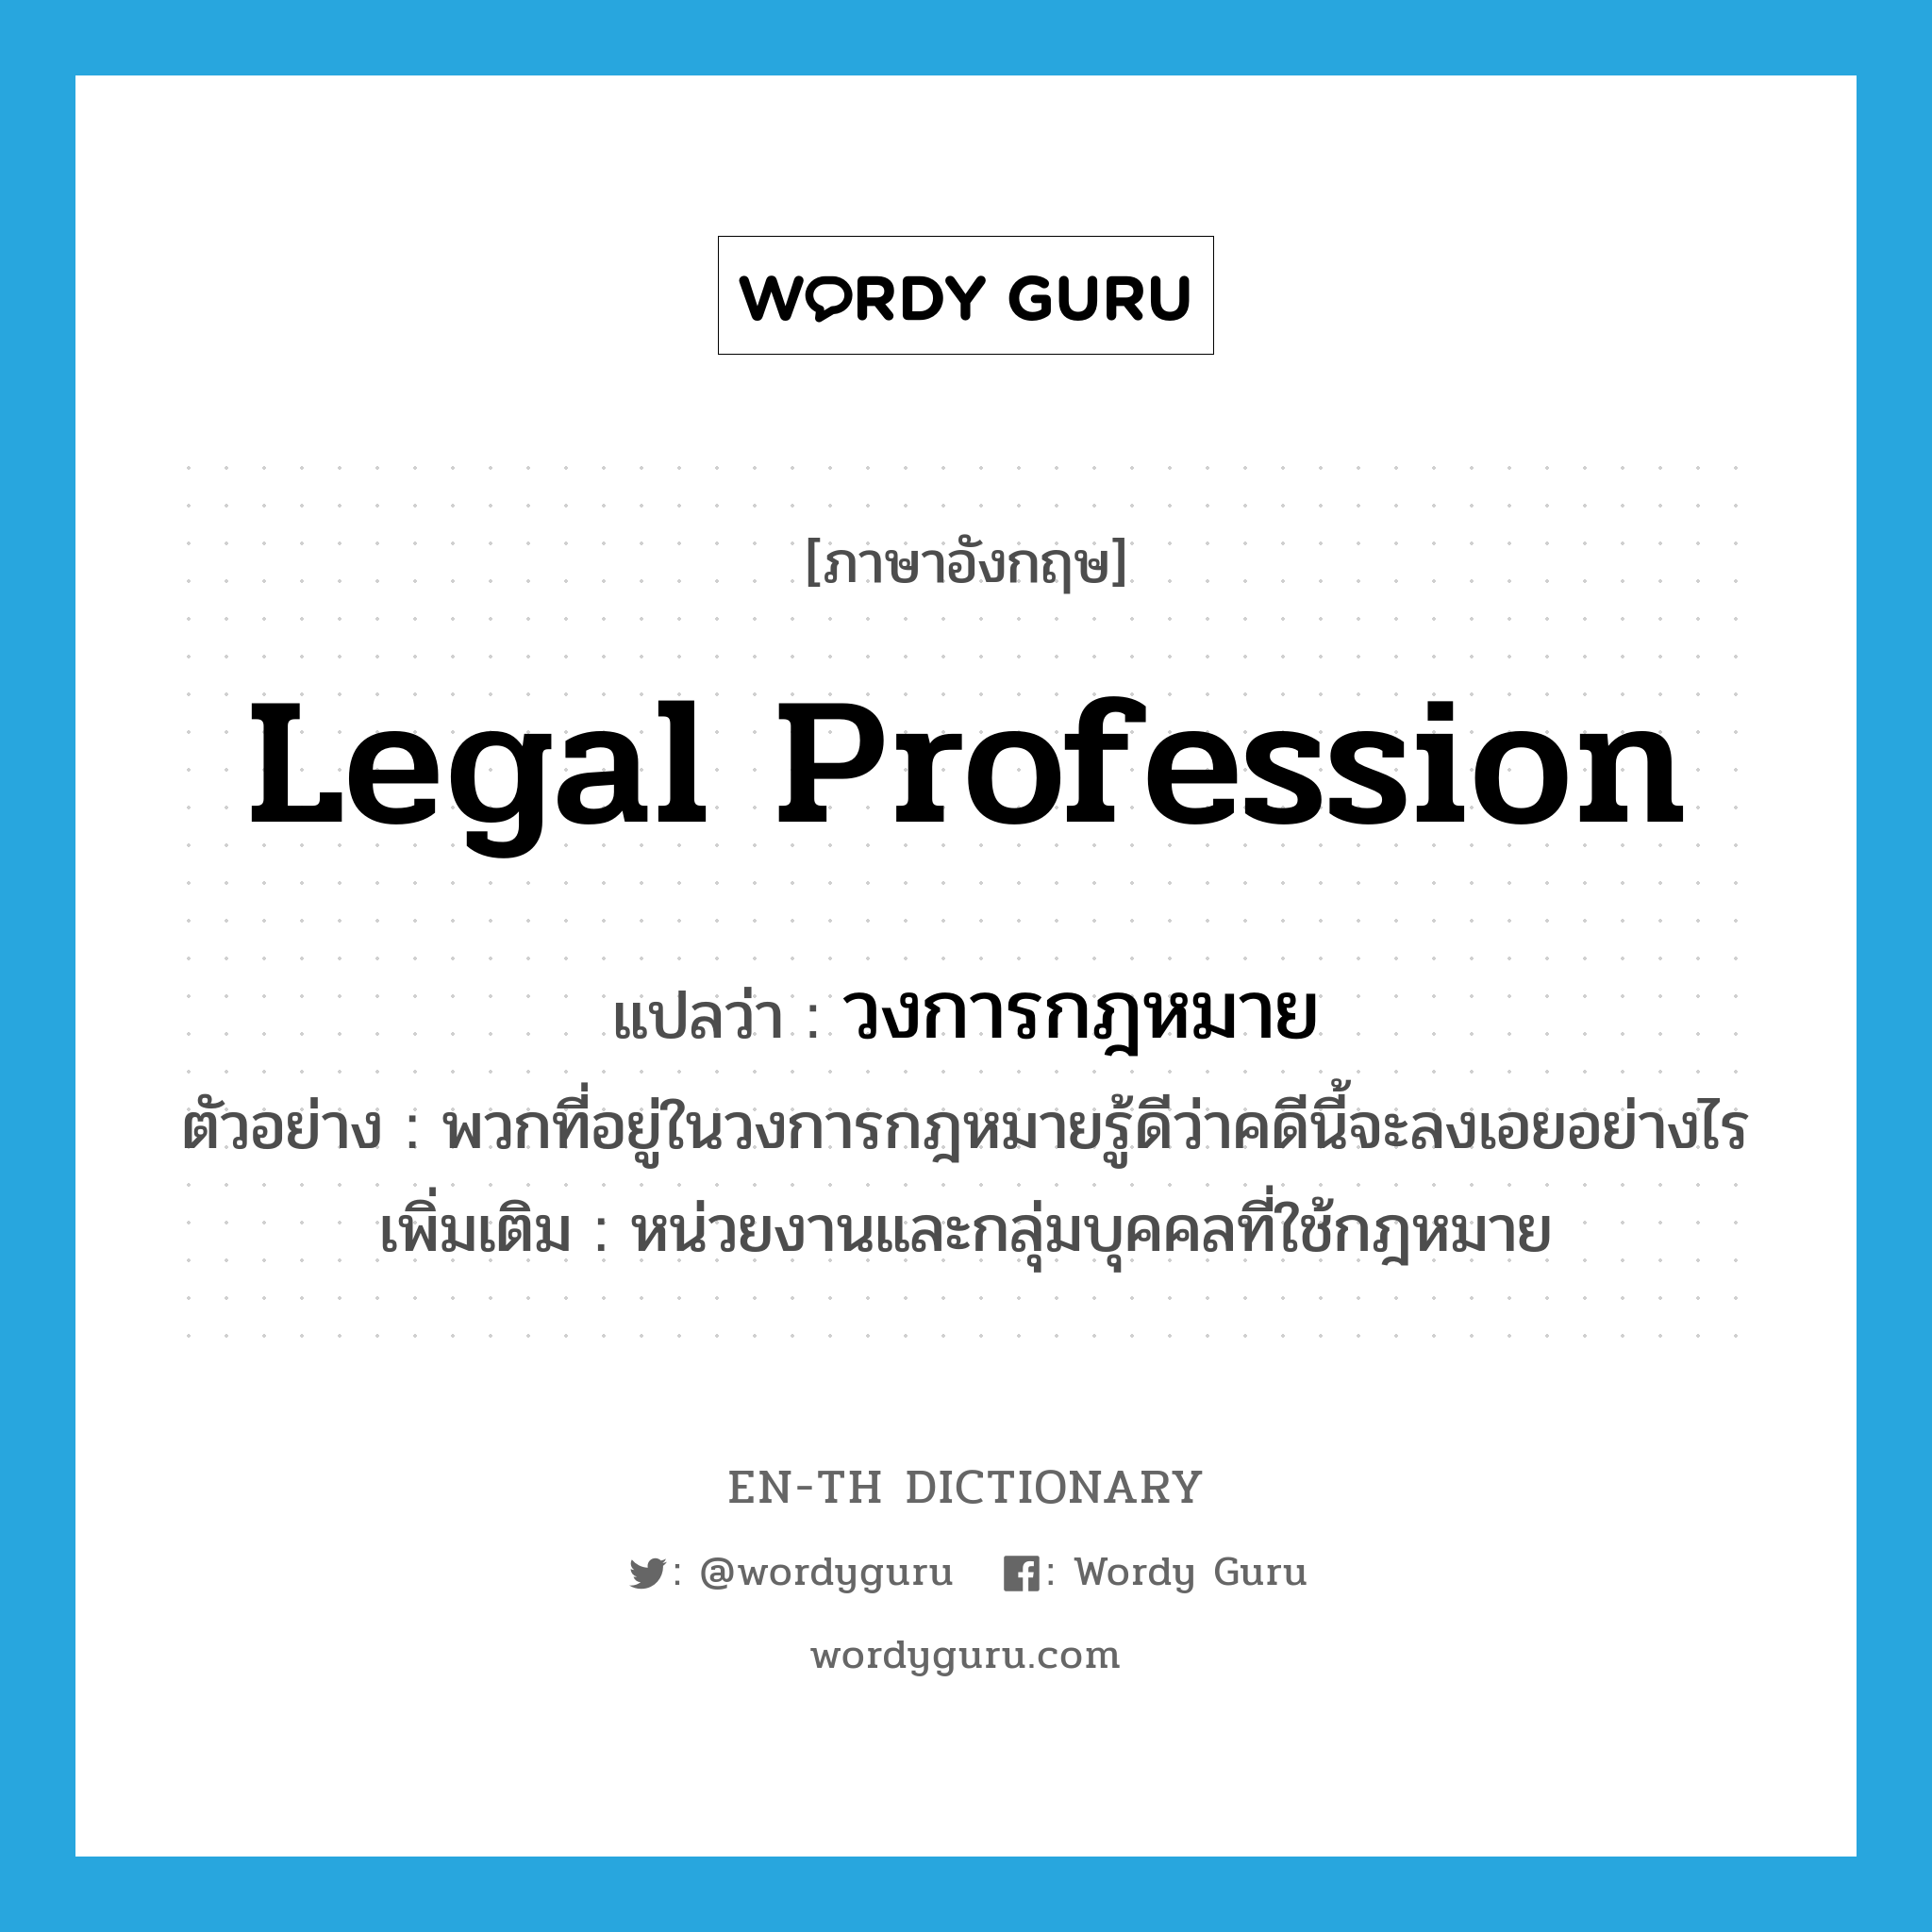 วงการกฎหมาย ภาษาอังกฤษ?, คำศัพท์ภาษาอังกฤษ วงการกฎหมาย แปลว่า legal profession ประเภท N ตัวอย่าง พวกที่อยู่ในวงการกฎหมายรู้ดีว่าคดีนี้จะลงเอยอย่างไร เพิ่มเติม หน่วยงานและกลุ่มบุคคลที่ใช้กฎหมาย หมวด N